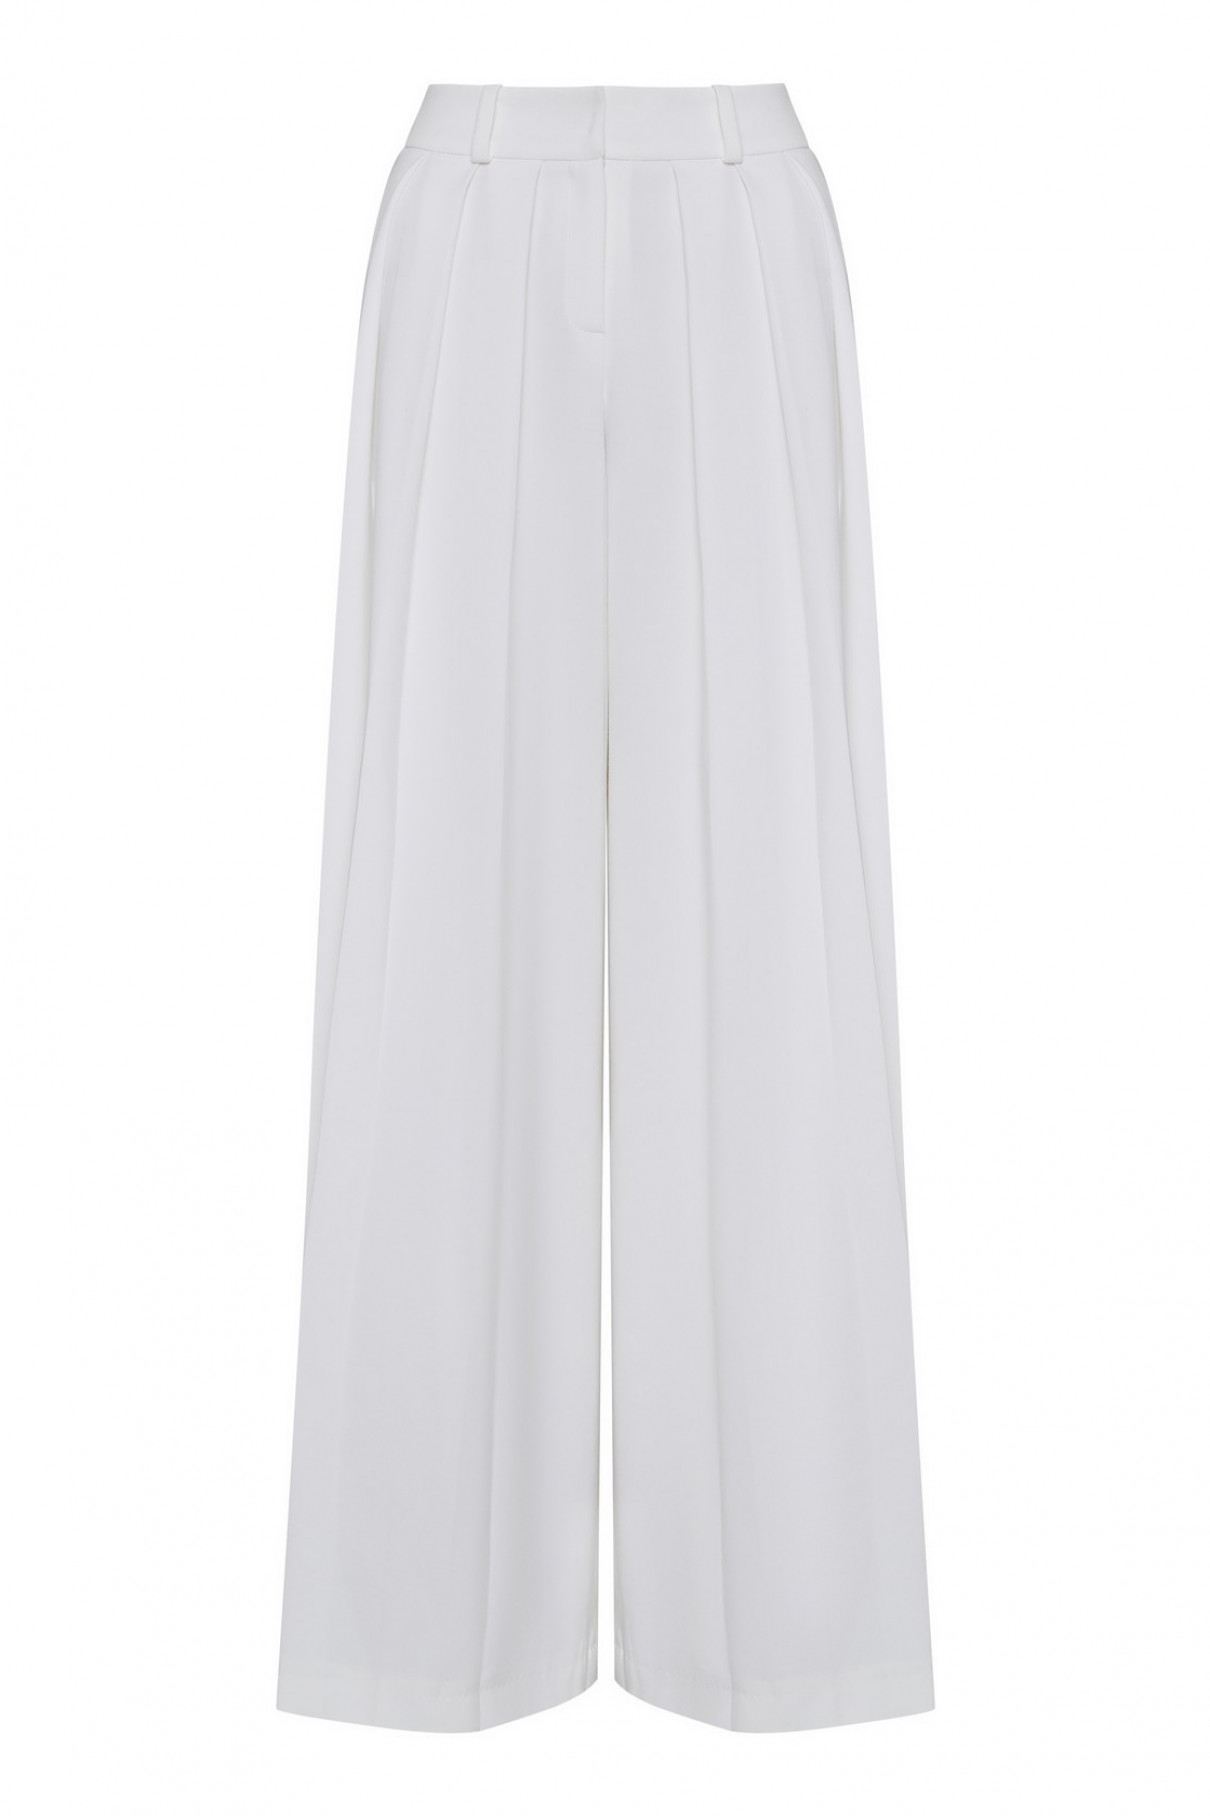 Белые брюки со складками , Белый, арт. FR20-АВ-4-бл-4 купить в интернет-магазине